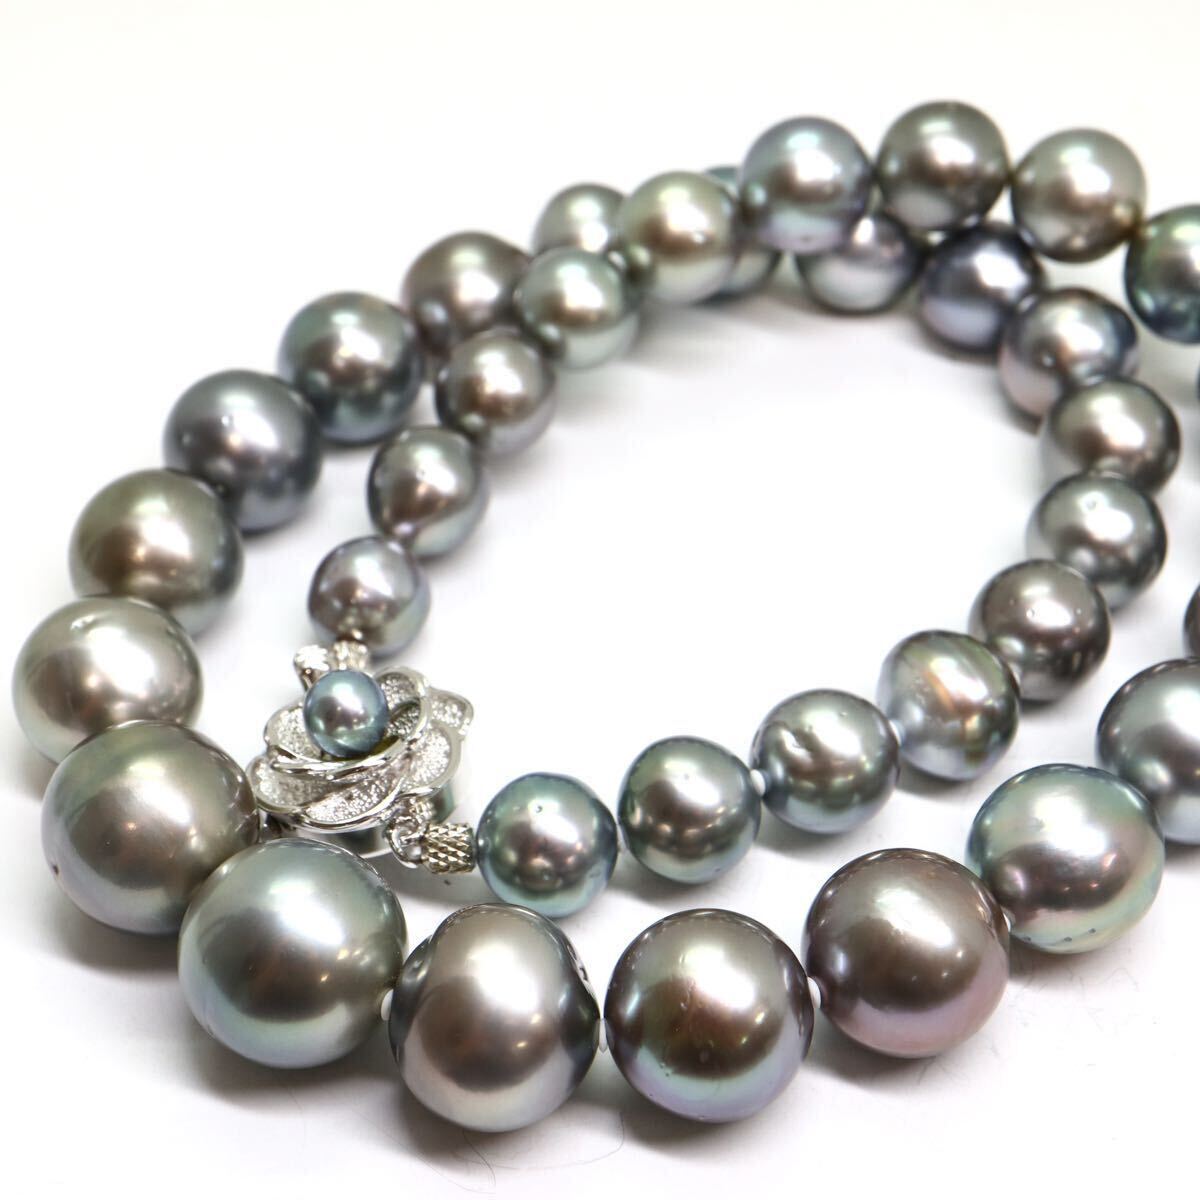 鑑別書付き!!《南洋黒蝶真珠ネックレス》A 約9.0-14.5mm珠 89.6g 約45cm pearl necklace ジュエリー jewelry EC0/EC0の画像1